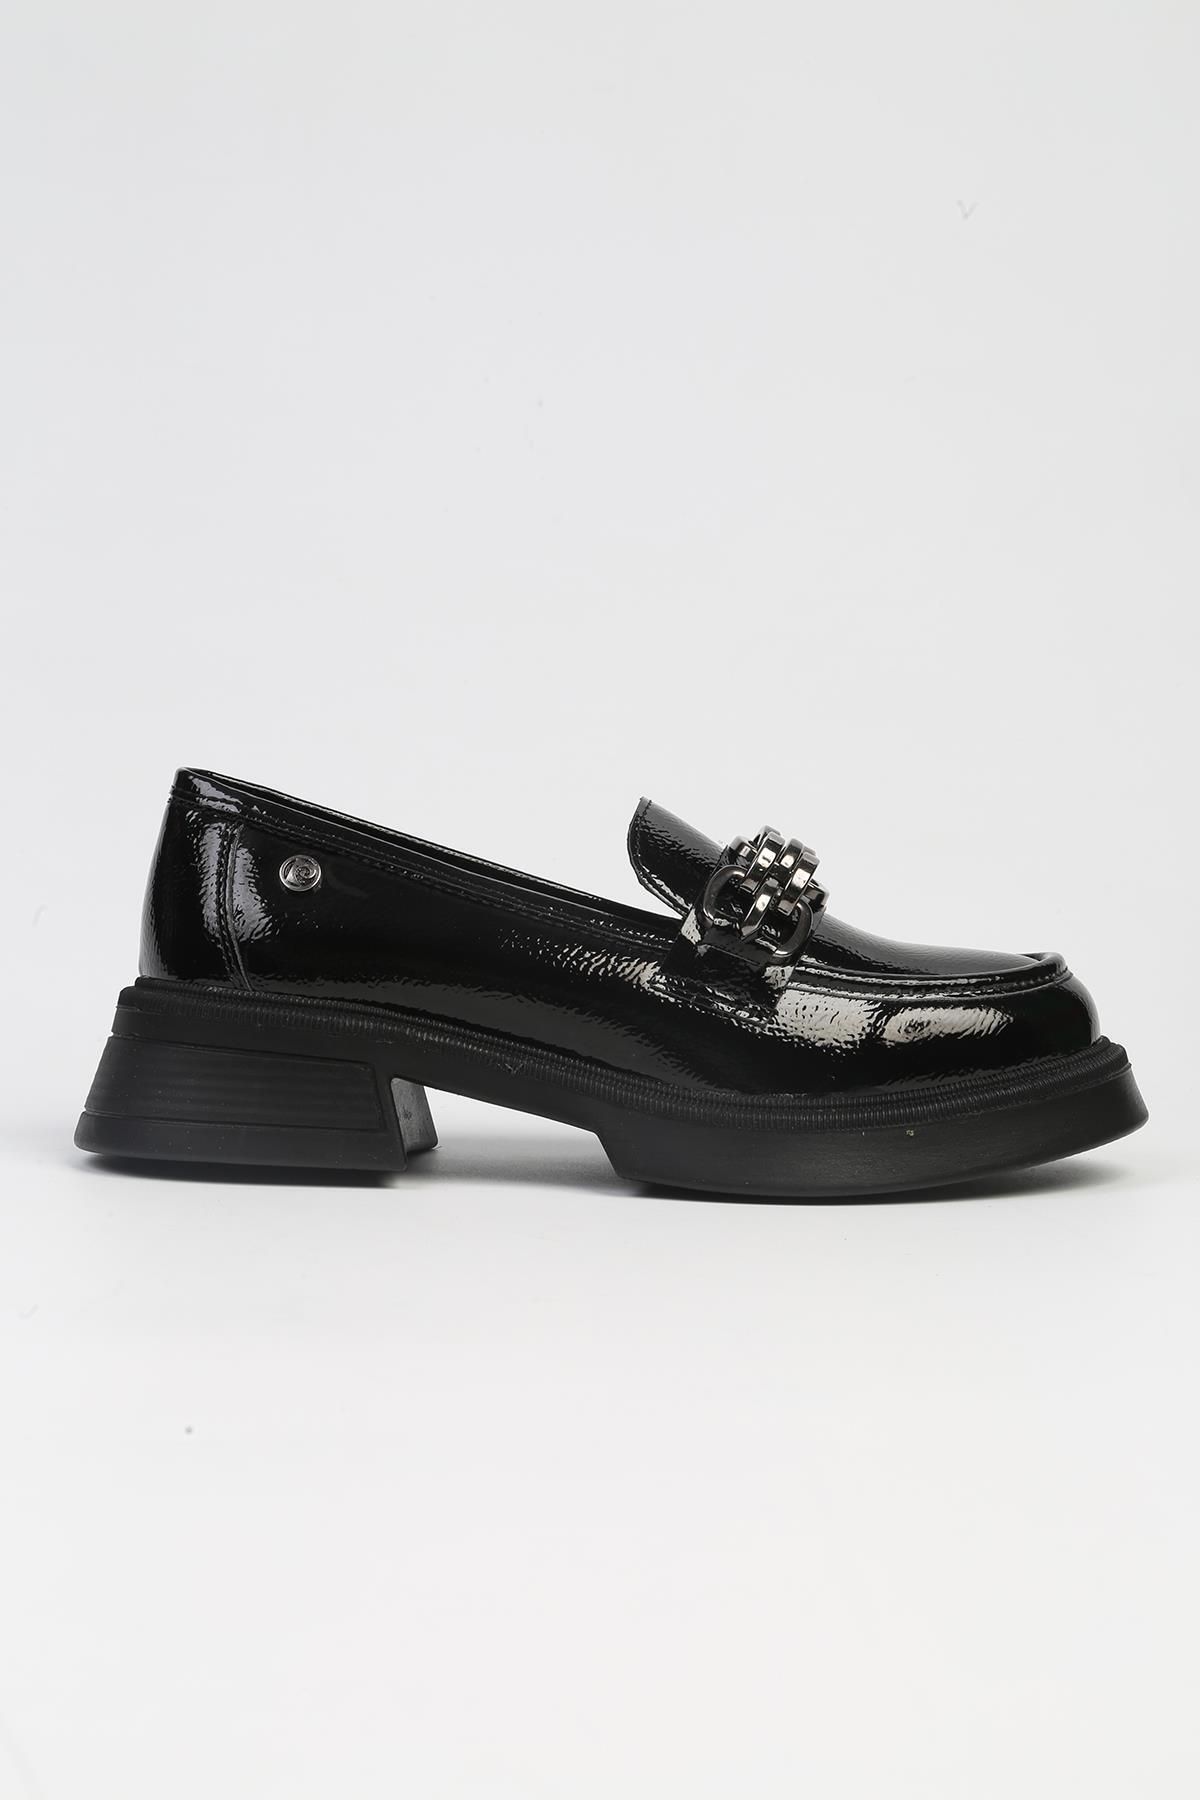 Pierre Cardin ® | PC-52651 - 3441 Rugan Siyah- Kadın Günlük Ayakkabı